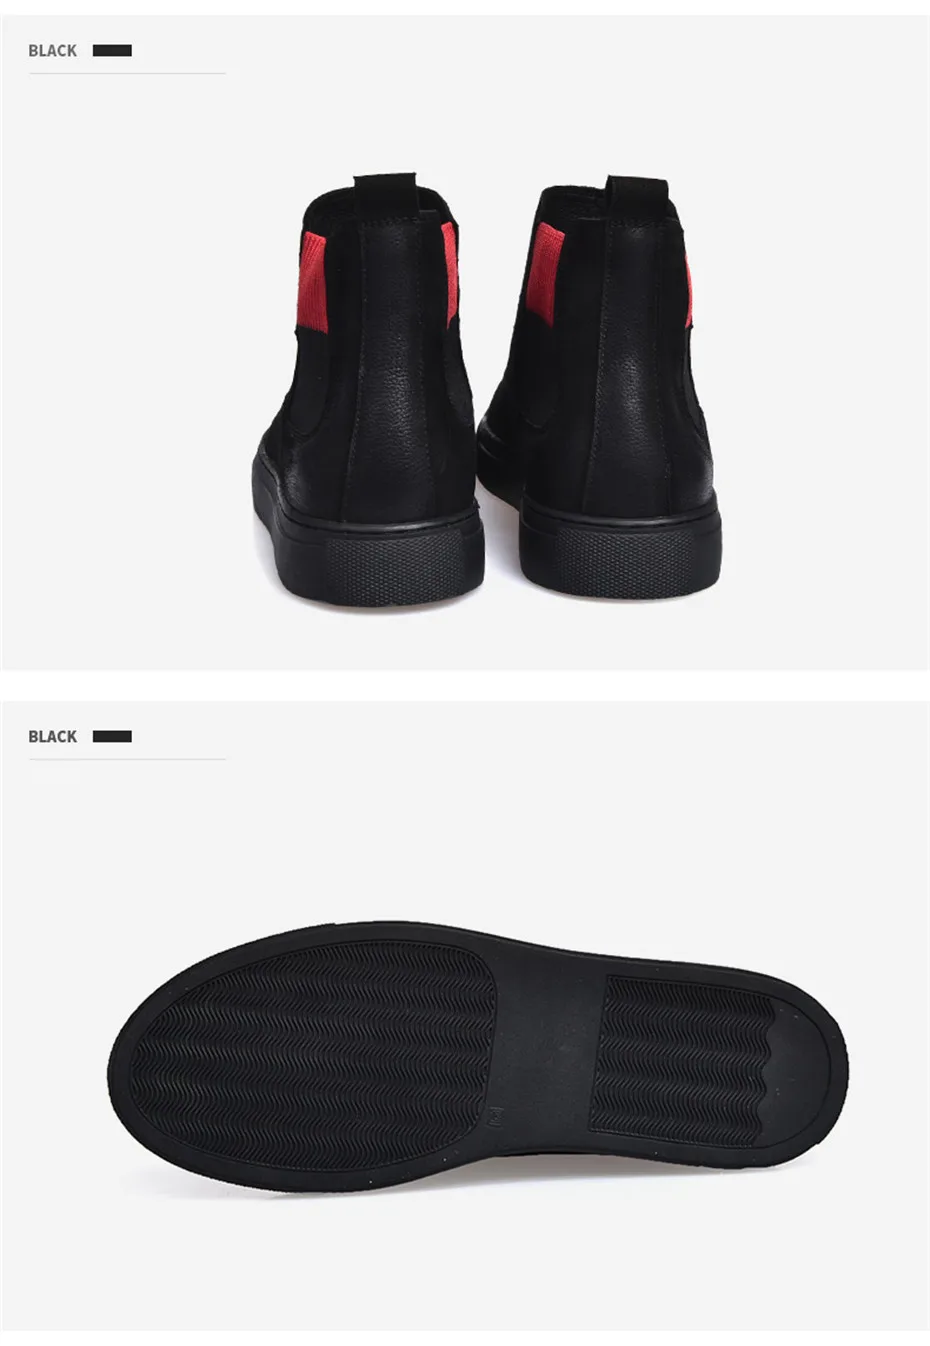 NINYOO/Новинка; высококачественные мужские ботинки «Челси»; зимние ботинки из натуральной кожи; износостойкие зимние ботинки на меху до лодыжки; Черные Ботинки Martin; 44